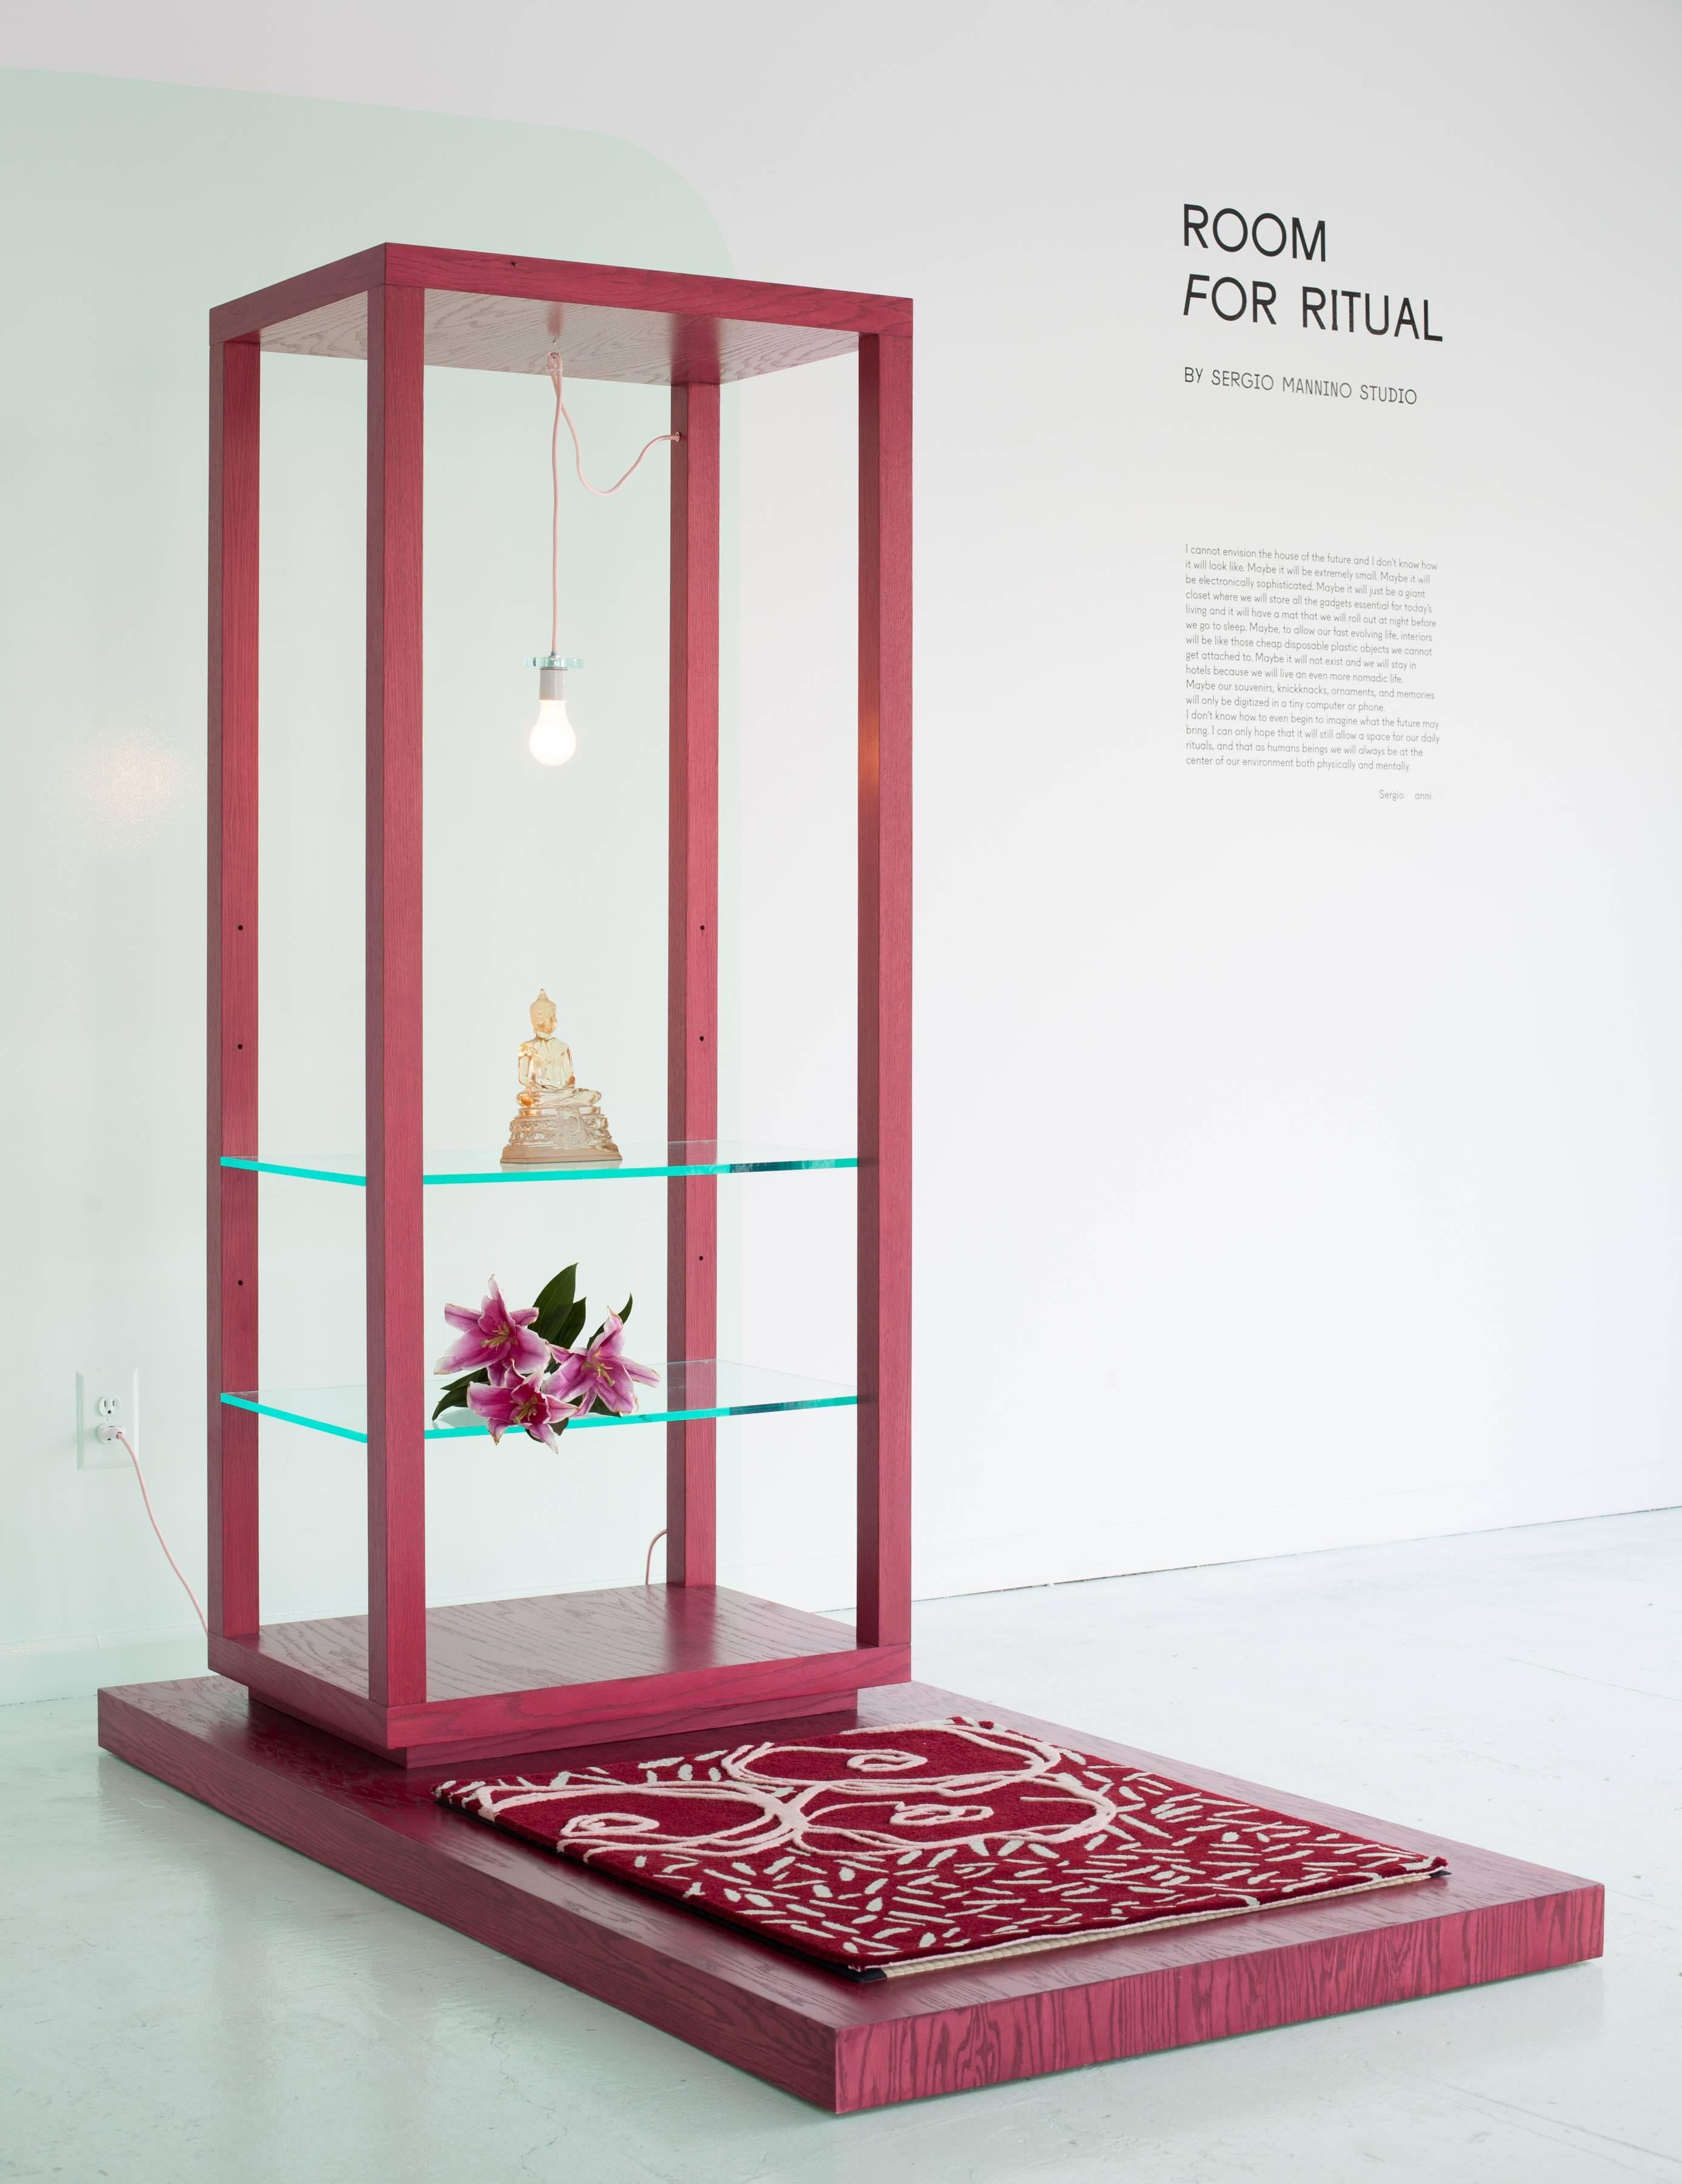 Room for Ritual (oder Cento Storie #67) ist ein Meditationsaltar, der von Sergio Mannino für seine Einzelausstellung Cento Storie in der Galerie Memphis Postdesign in Mailand im Jahr 2002 entworfen wurde, die von Ettore Sottsass kuratiert wurde. Das